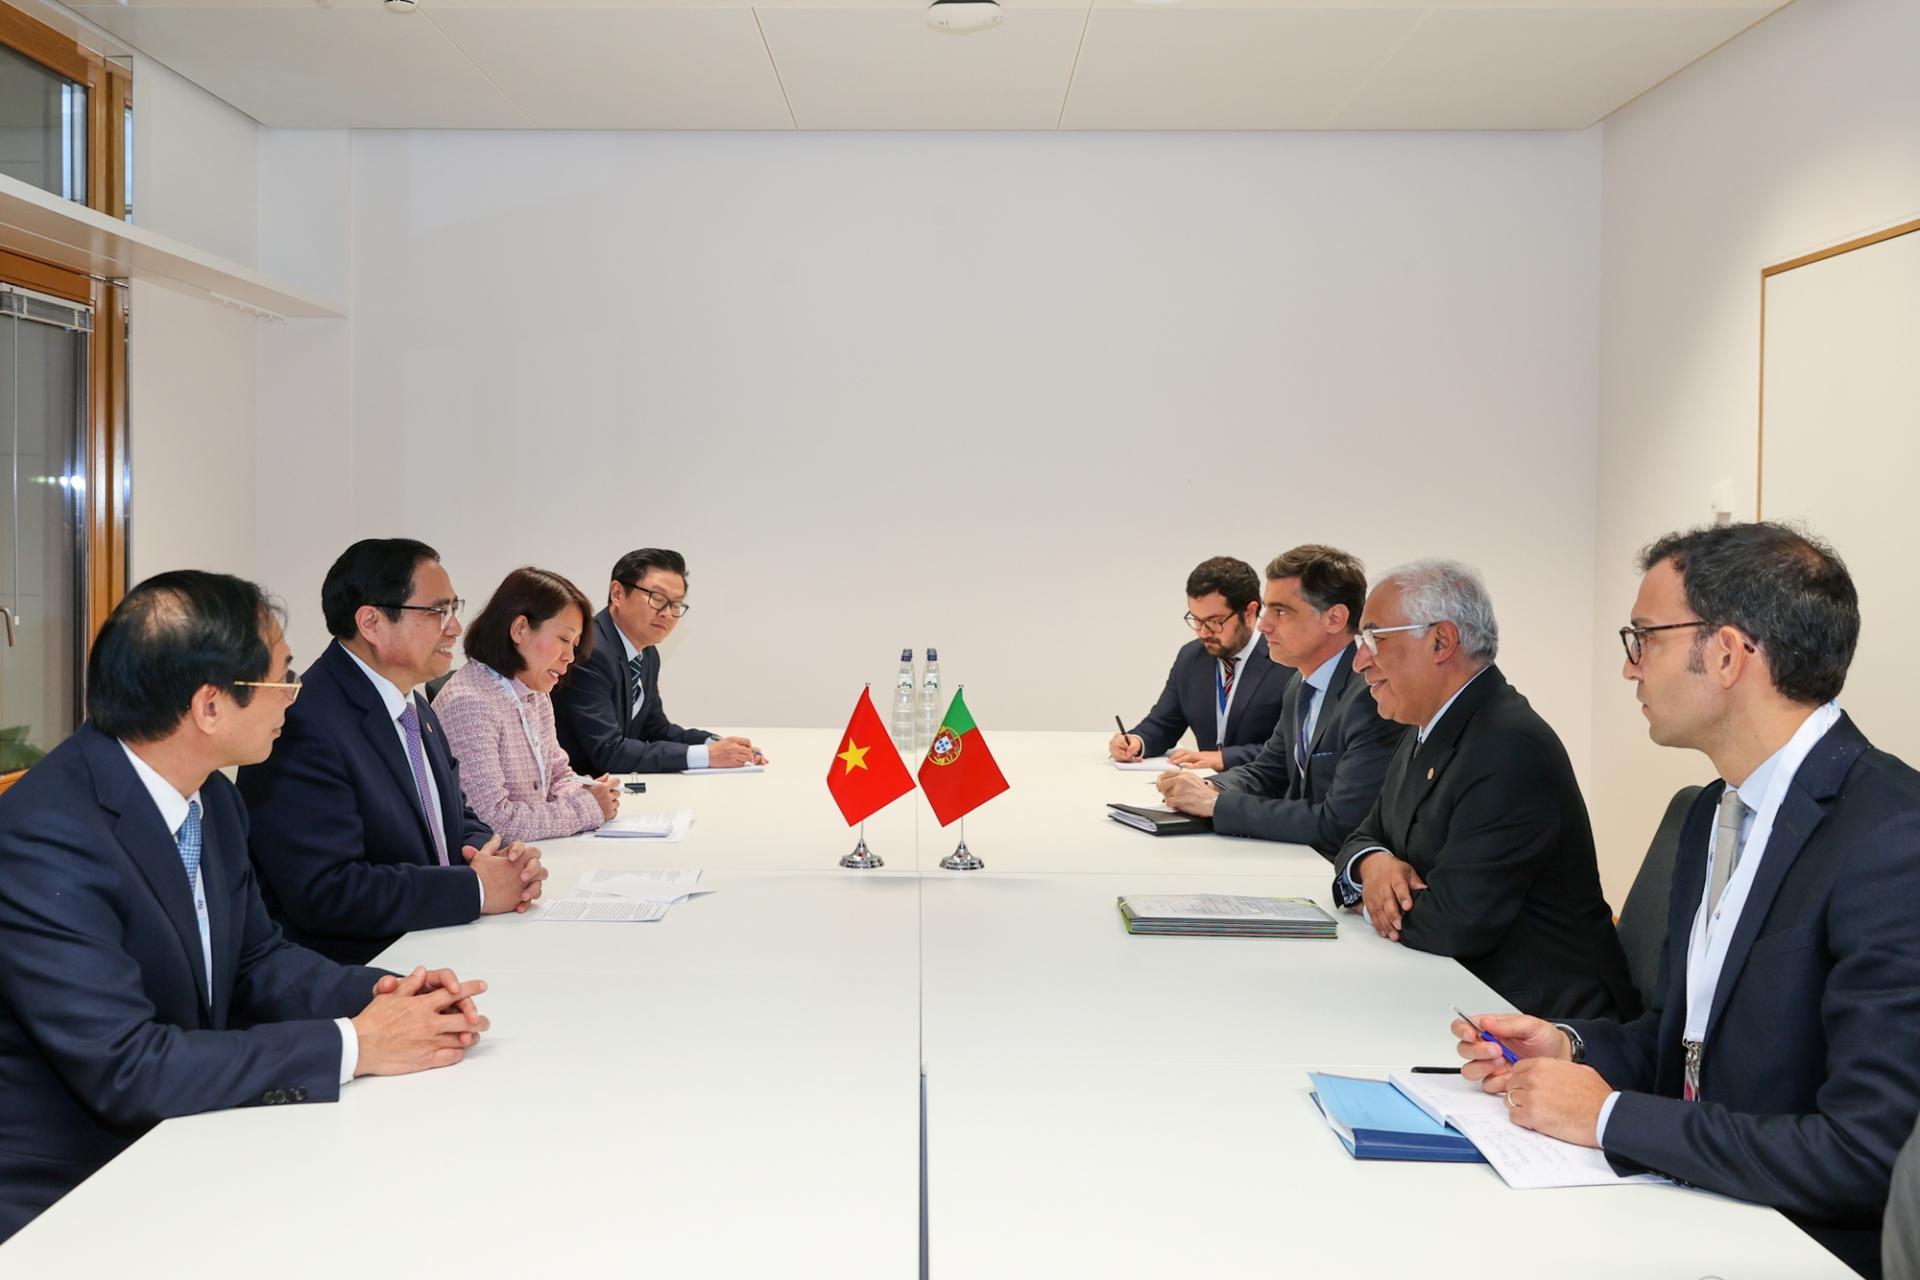 Thủ tướng António Costa đề nghị hai bên tăng cường hợp tác trong phát triển cơ sở hạ tầng, năng lượng tái tạo, tài chính điện tử, triển khai các dự án đầu tư xanh tại Việt Nam.